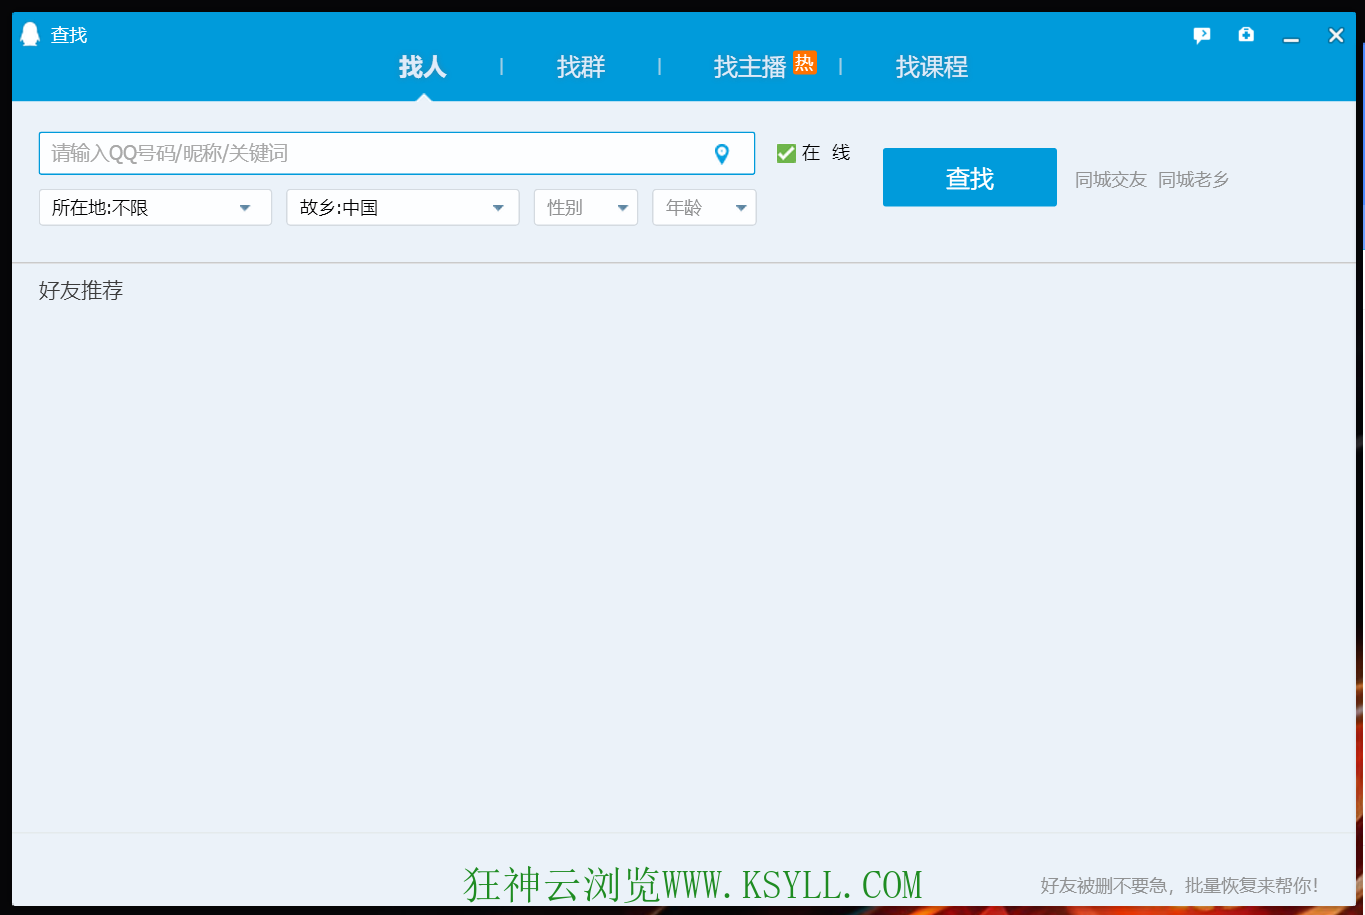 【分享】腾讯QQ v9.7.13.29150 去广告精简优化增强插图3